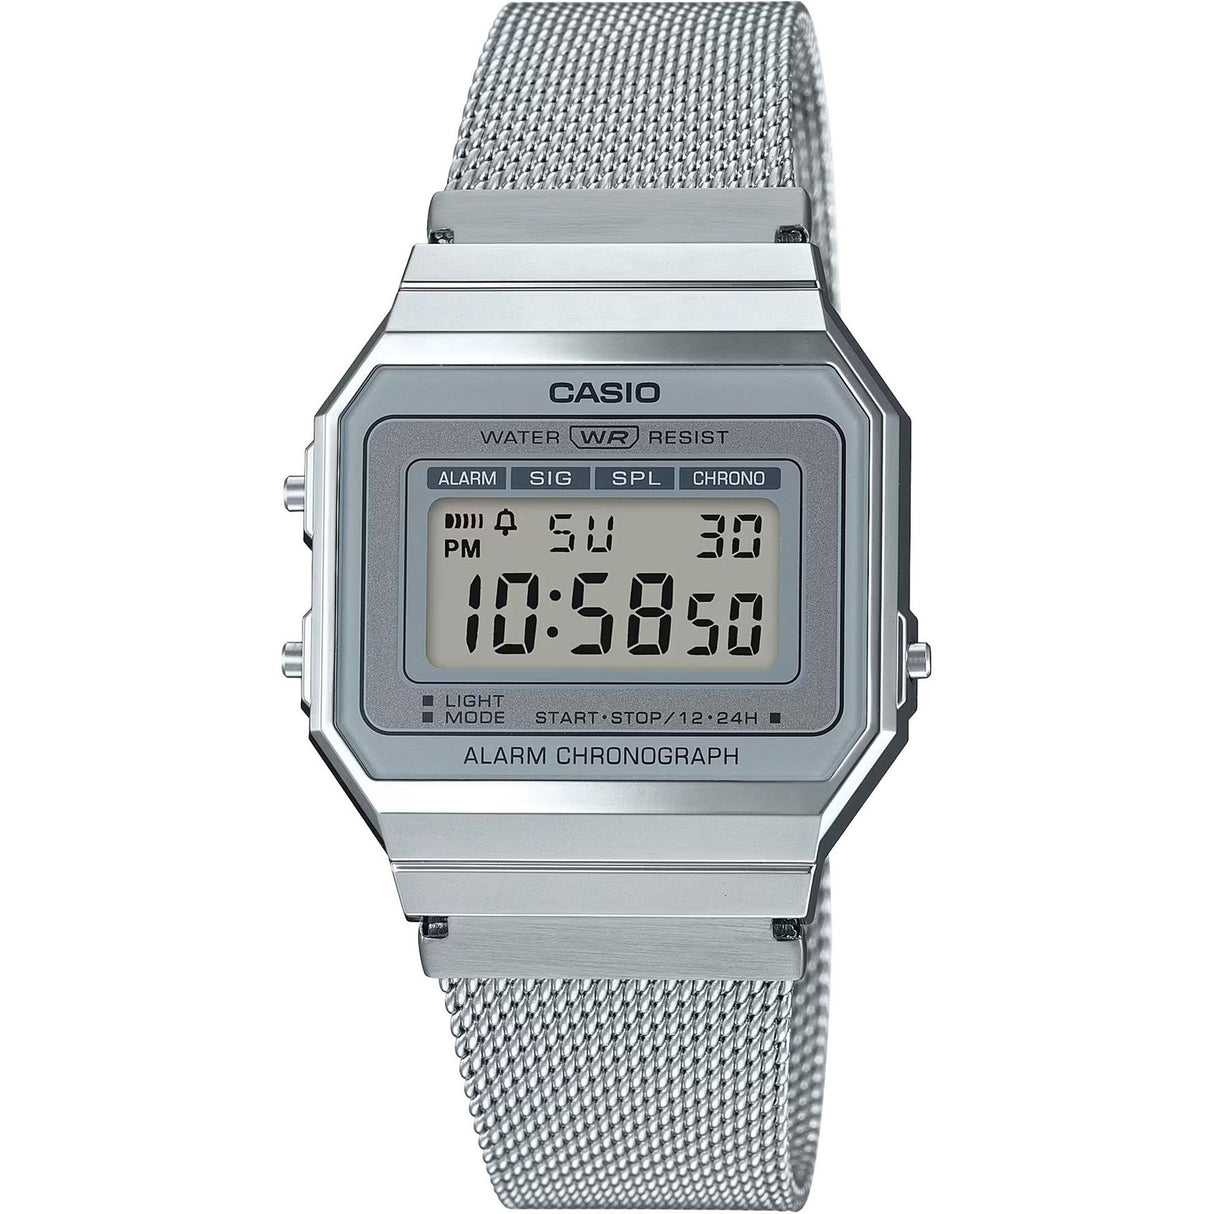 Unisex digital watch Easy-to-read display Stainless steel strap watch Plastic case watch Deployment clasp watch 35mm watch Quartz watch Modern watch Gift watch